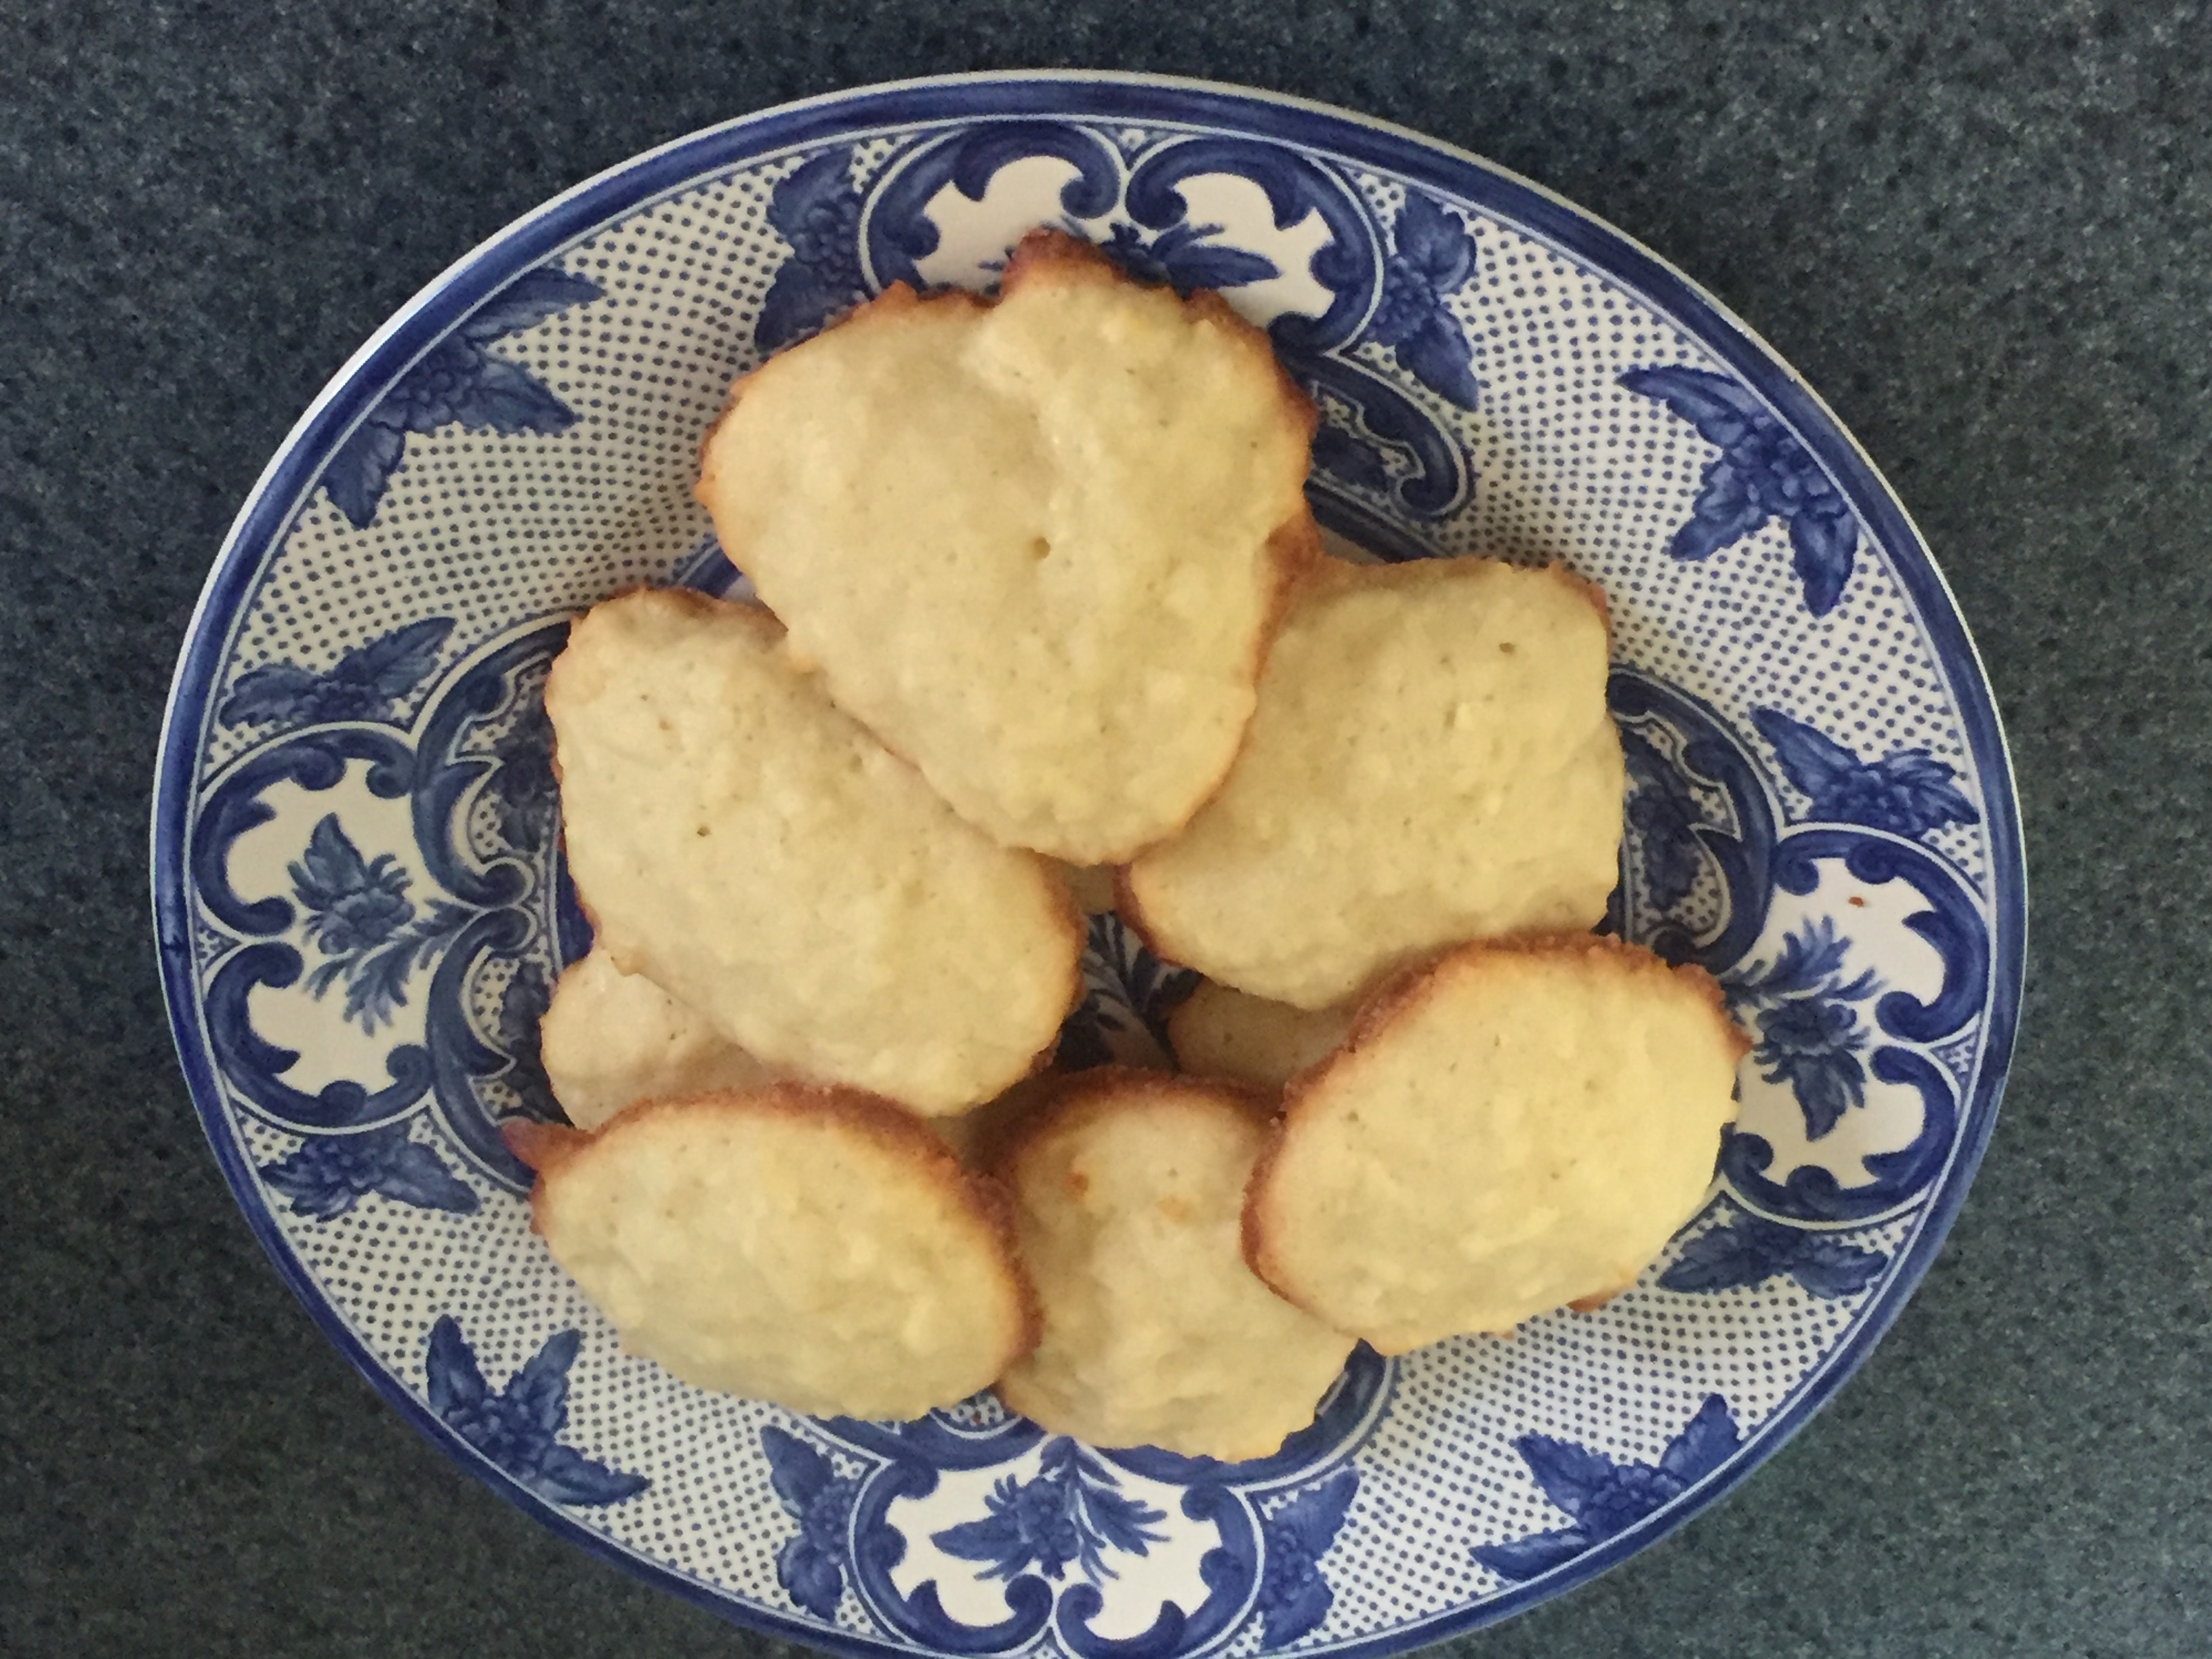 Ocho galletas jumbal de coco ligeramente doradas se apilan en un plato decorativo de porcelana azul y blanca.